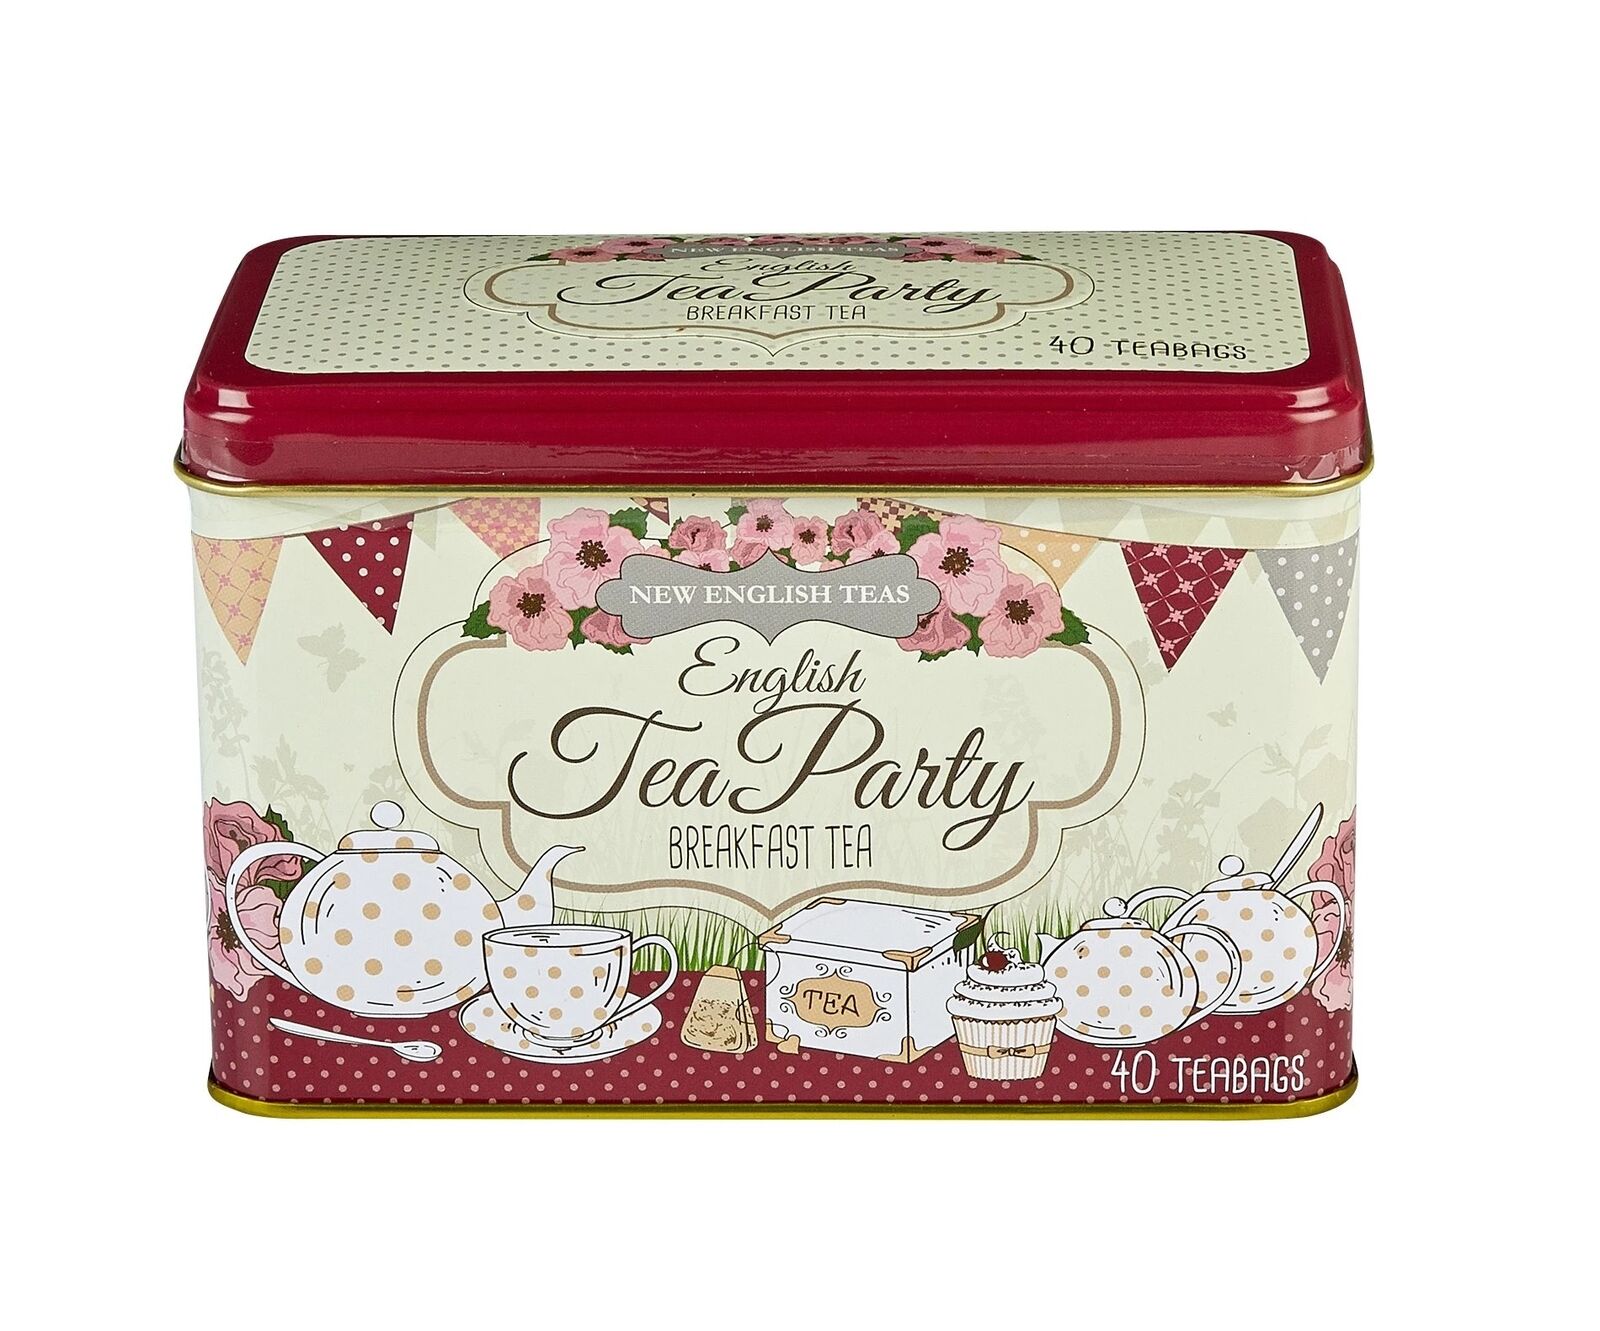 New English Teas English Tea Party Breakfast Tea Tin 40 Teabags